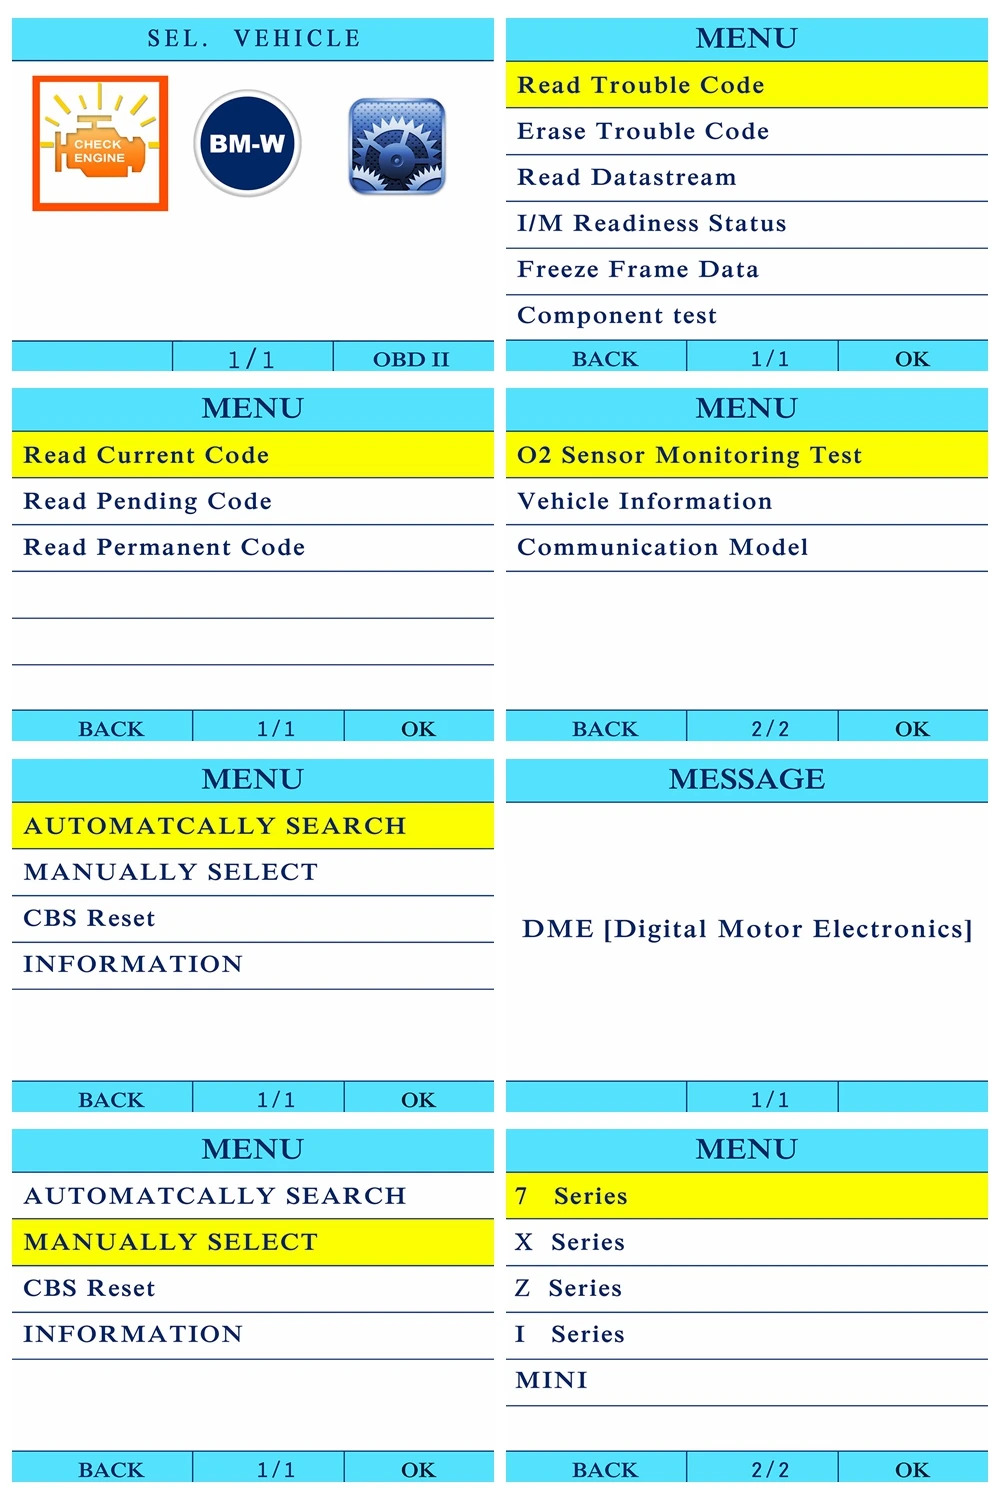 Autoxscan RS600 OBD2 для BMW MINI все серии все системы диагностики сканер АНАЛИЗАТОР работы двигателя неисправностей DTC читателя, чем создатель c501